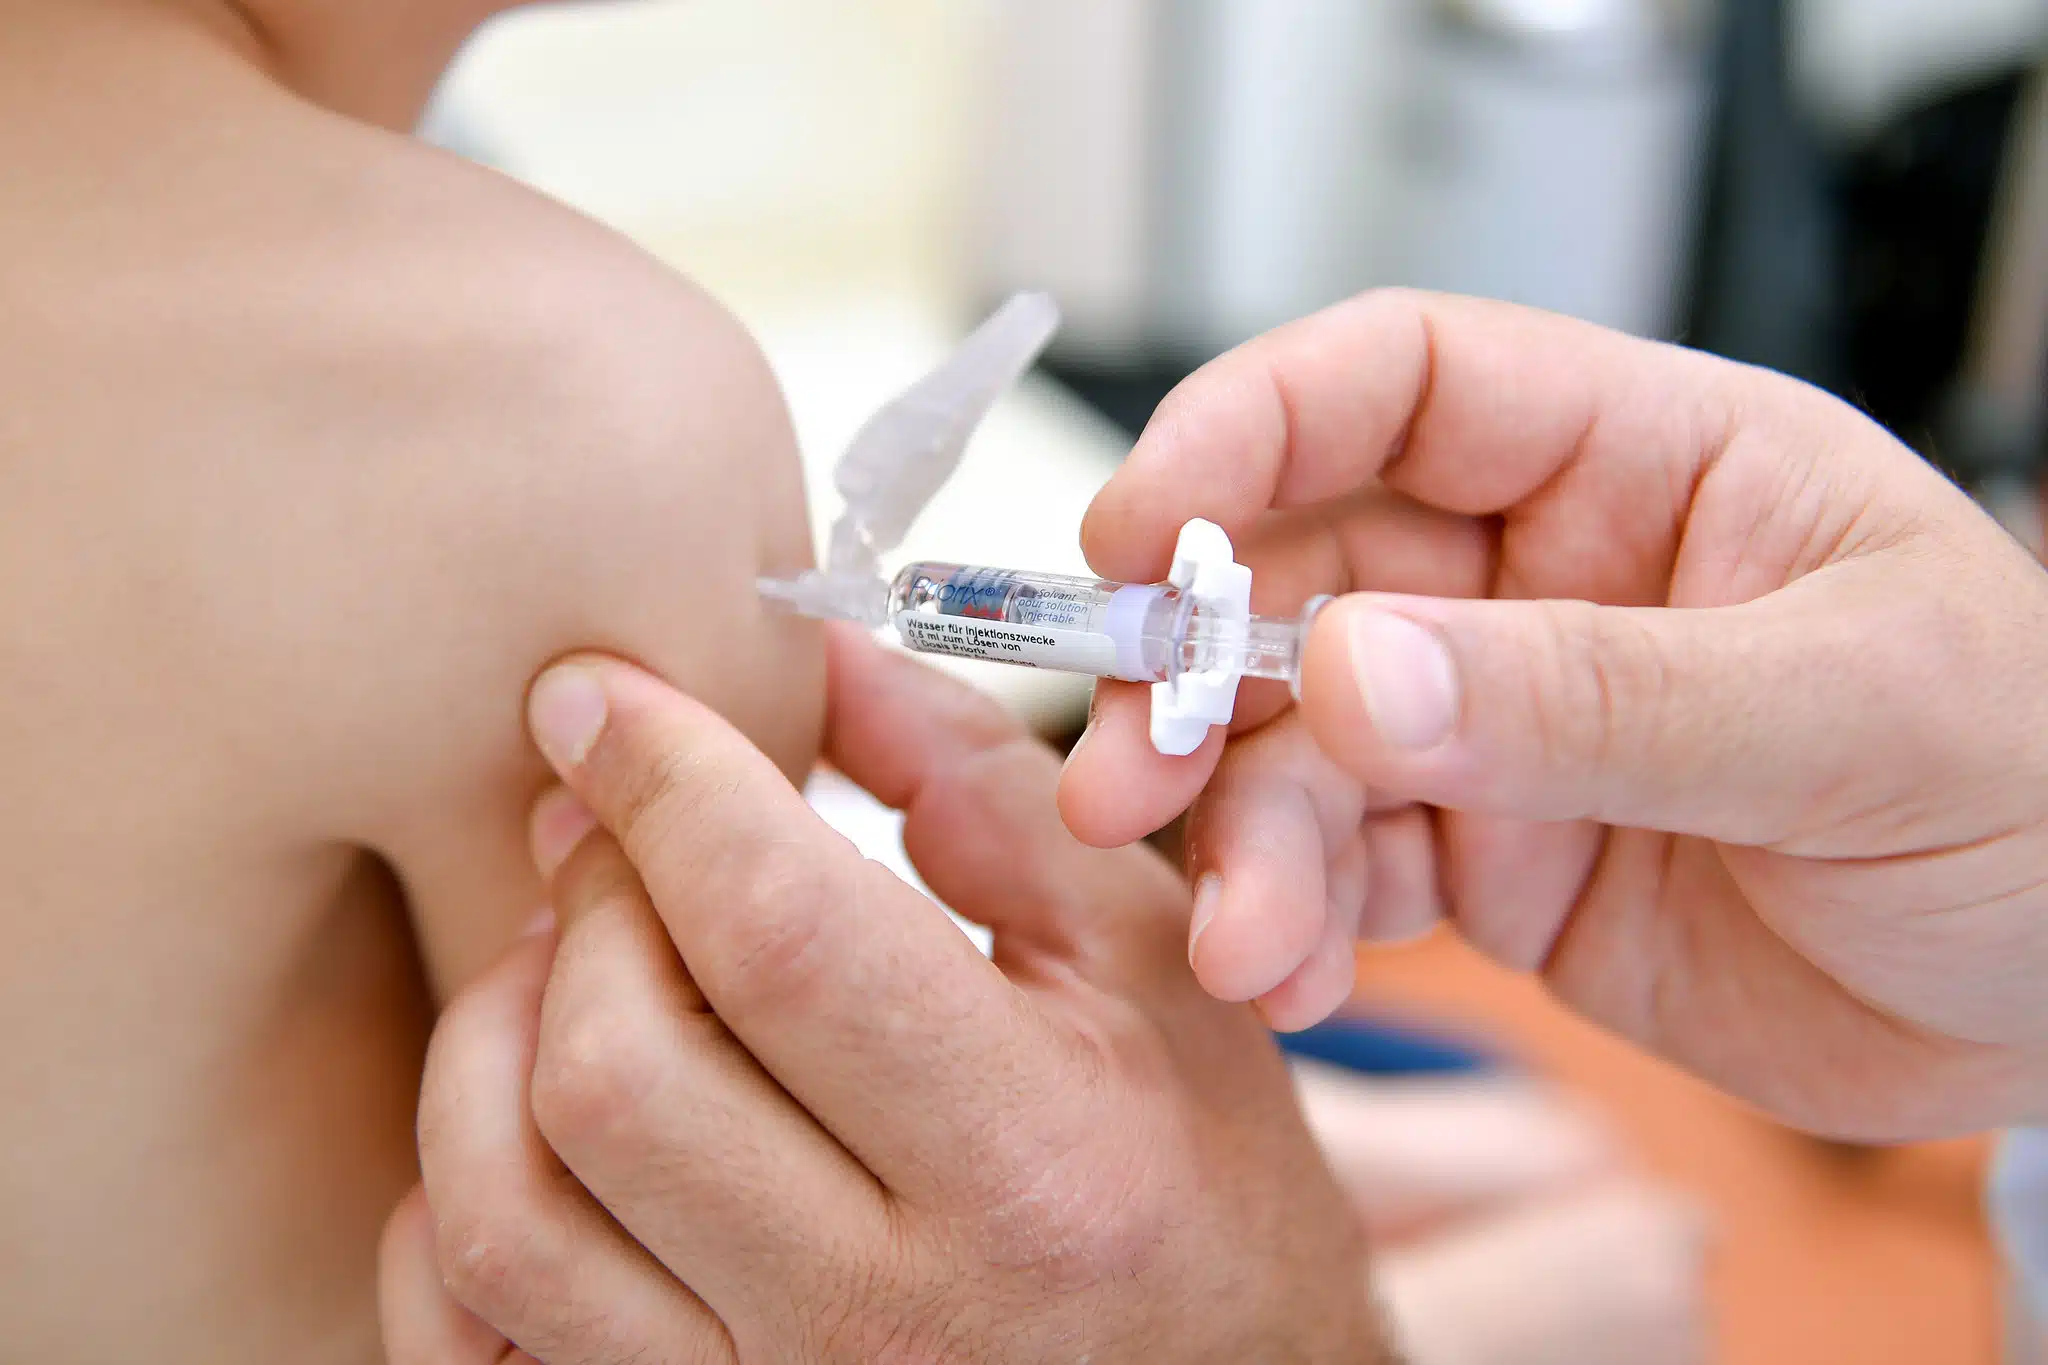 Manos de una persona vacunando en el brazo de un niño